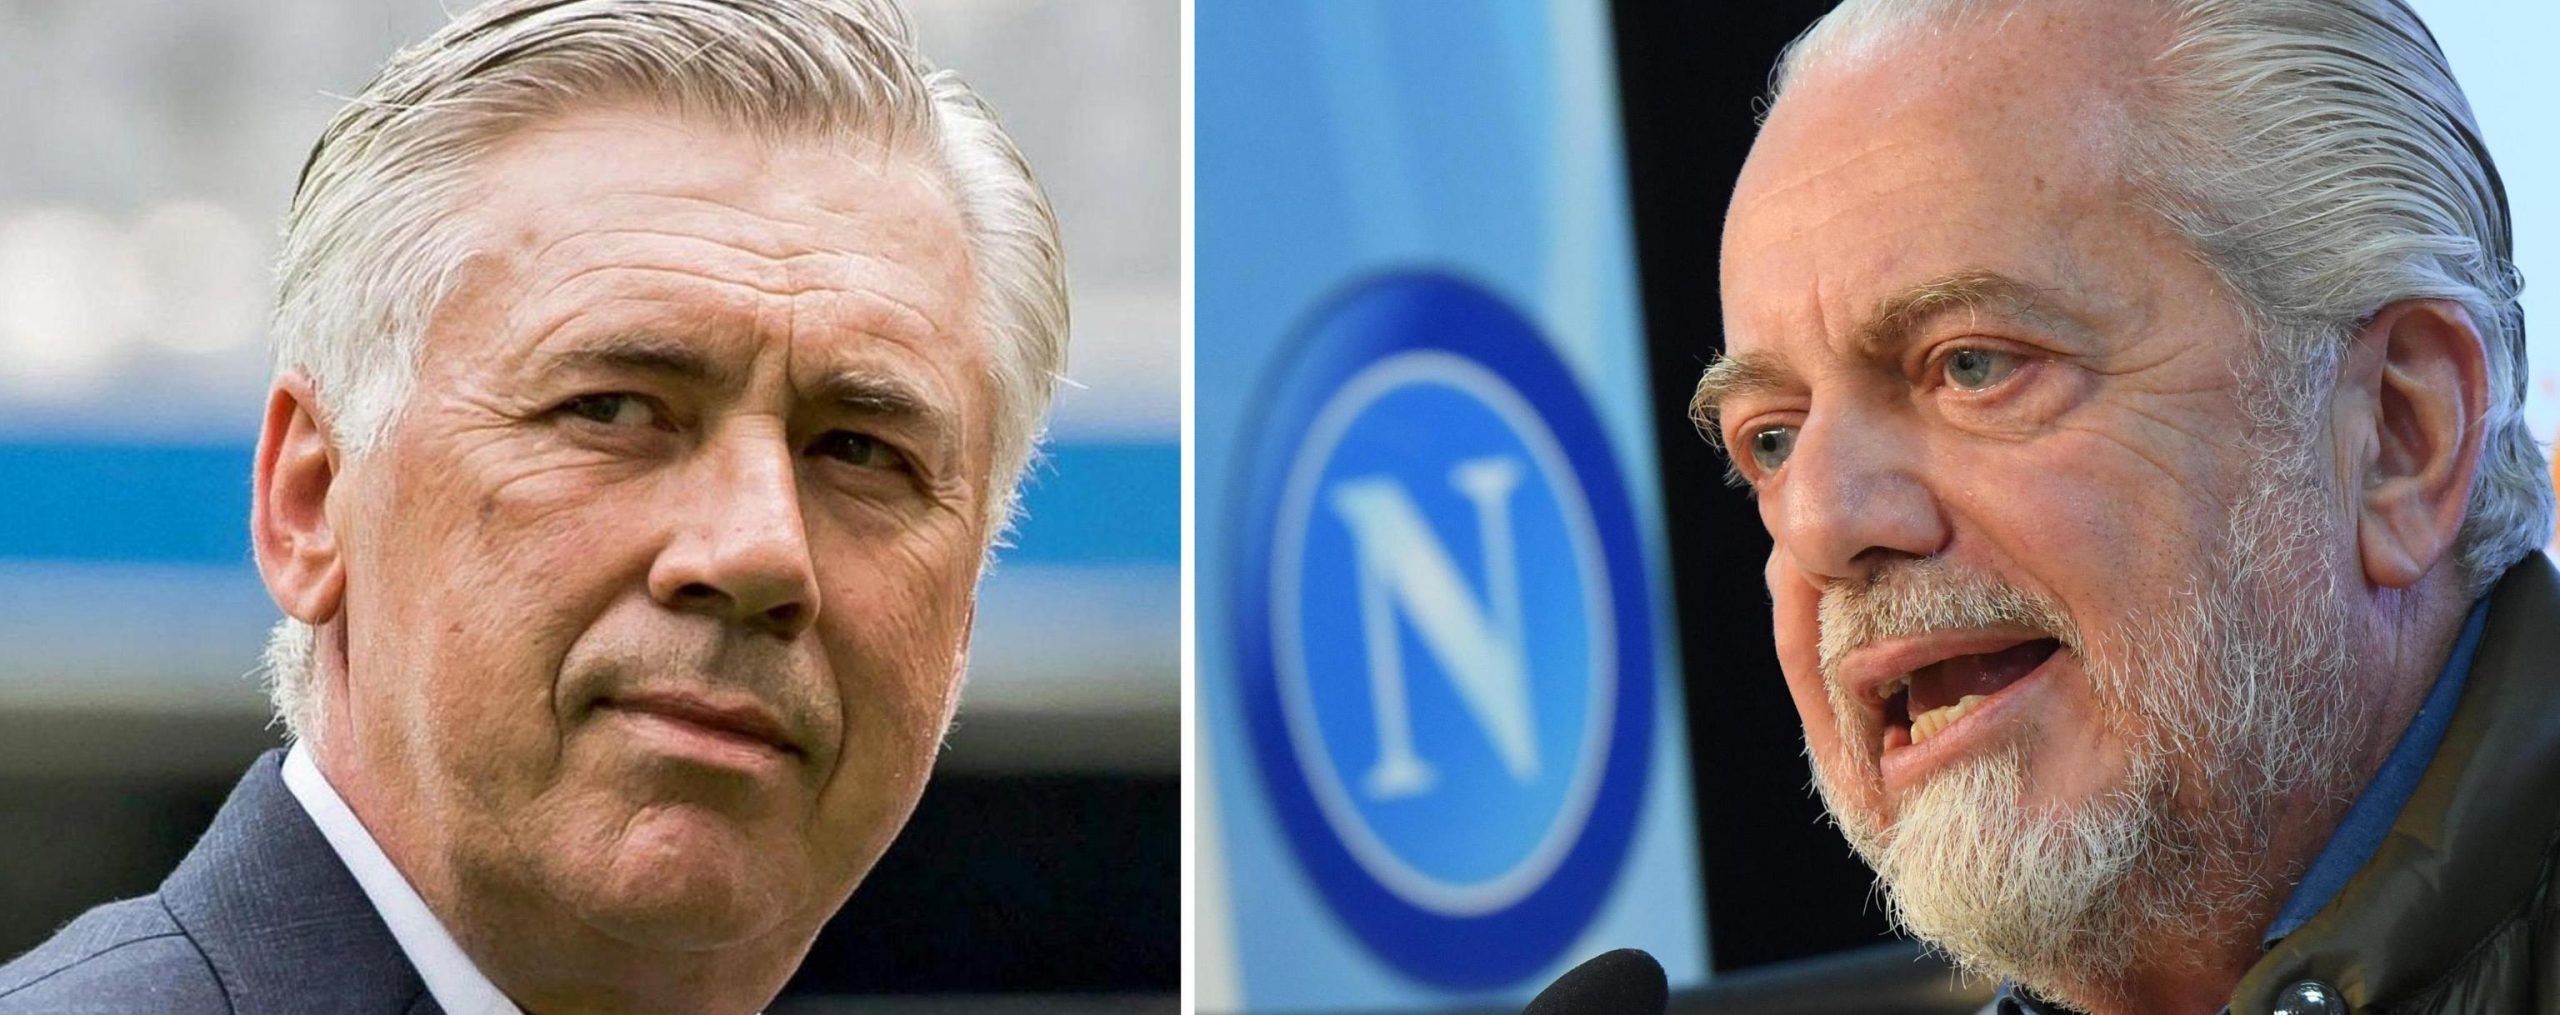 Ancelotti al Napoli: accordo raggiunto, Carletto alla corte di De Laurentiis